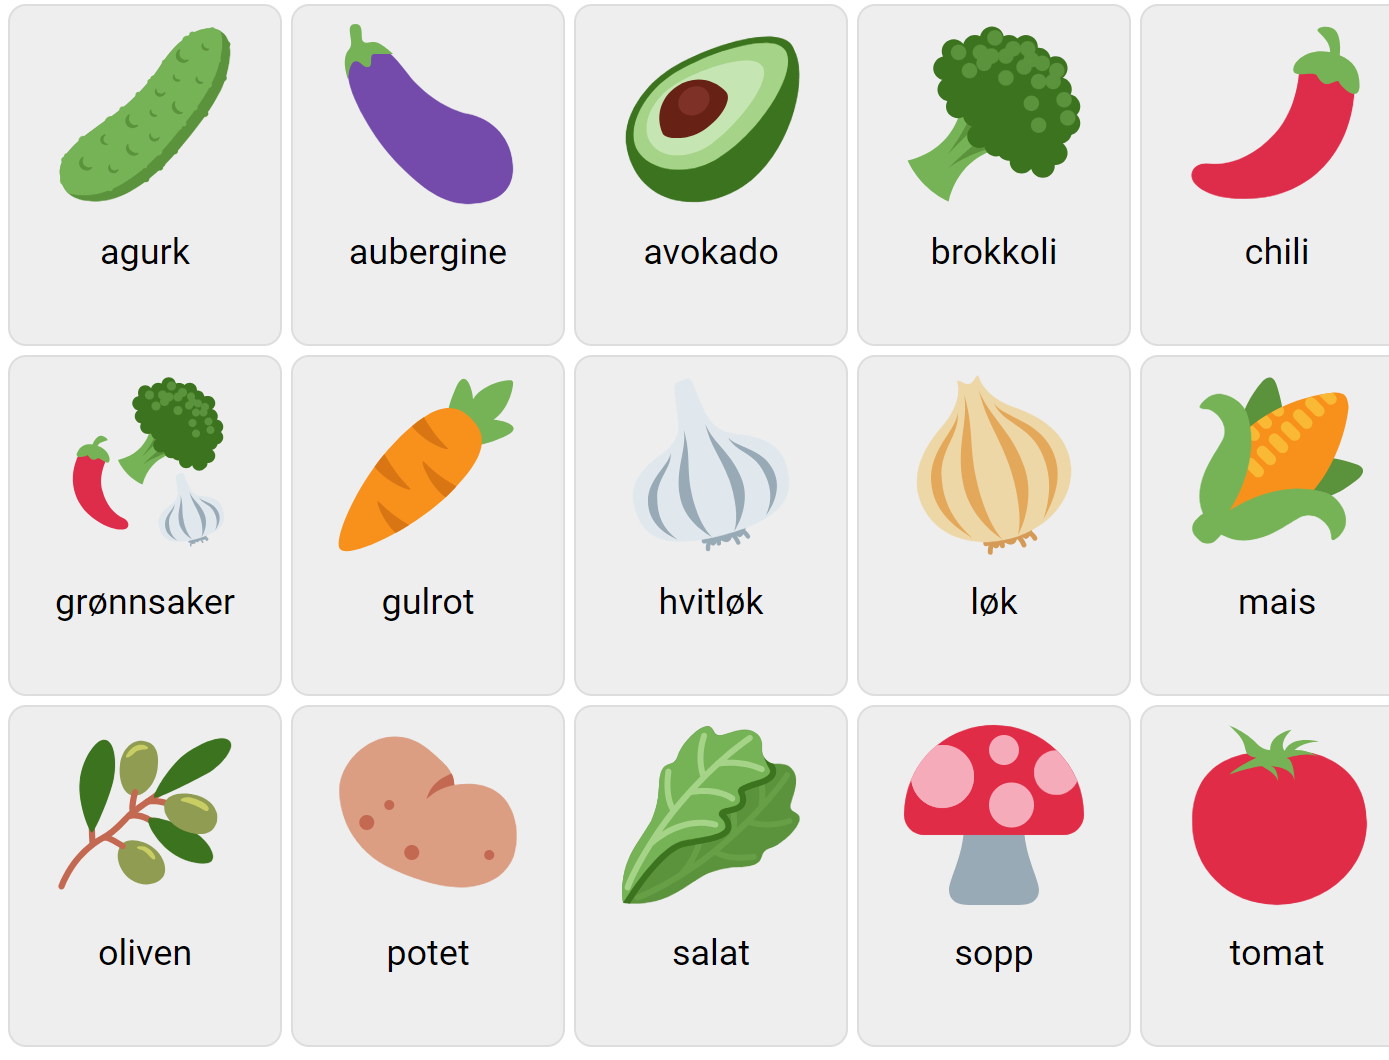 Vegetables in Norwegian